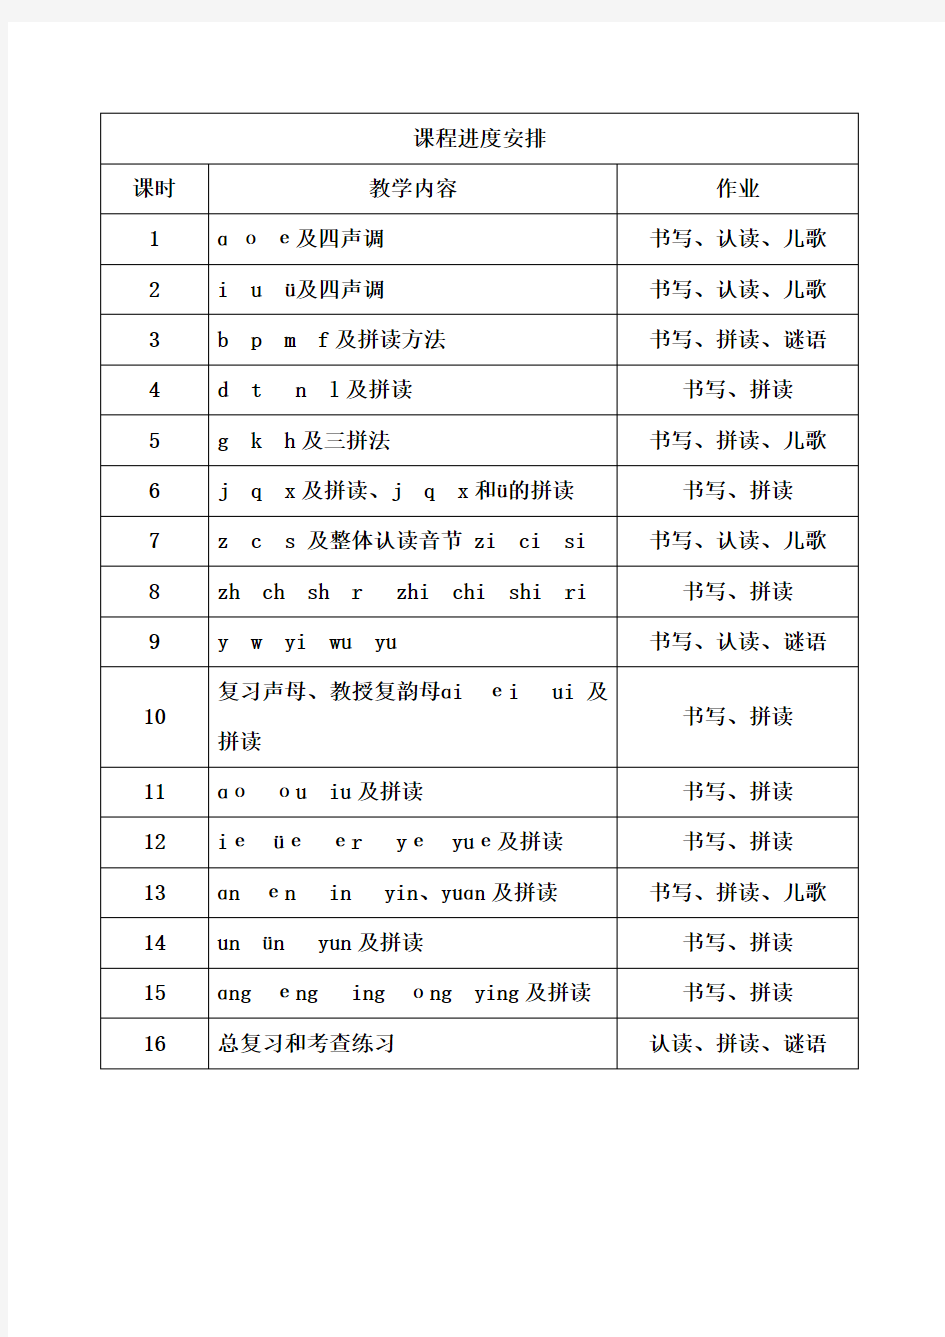 汉语拼音班课程计划表